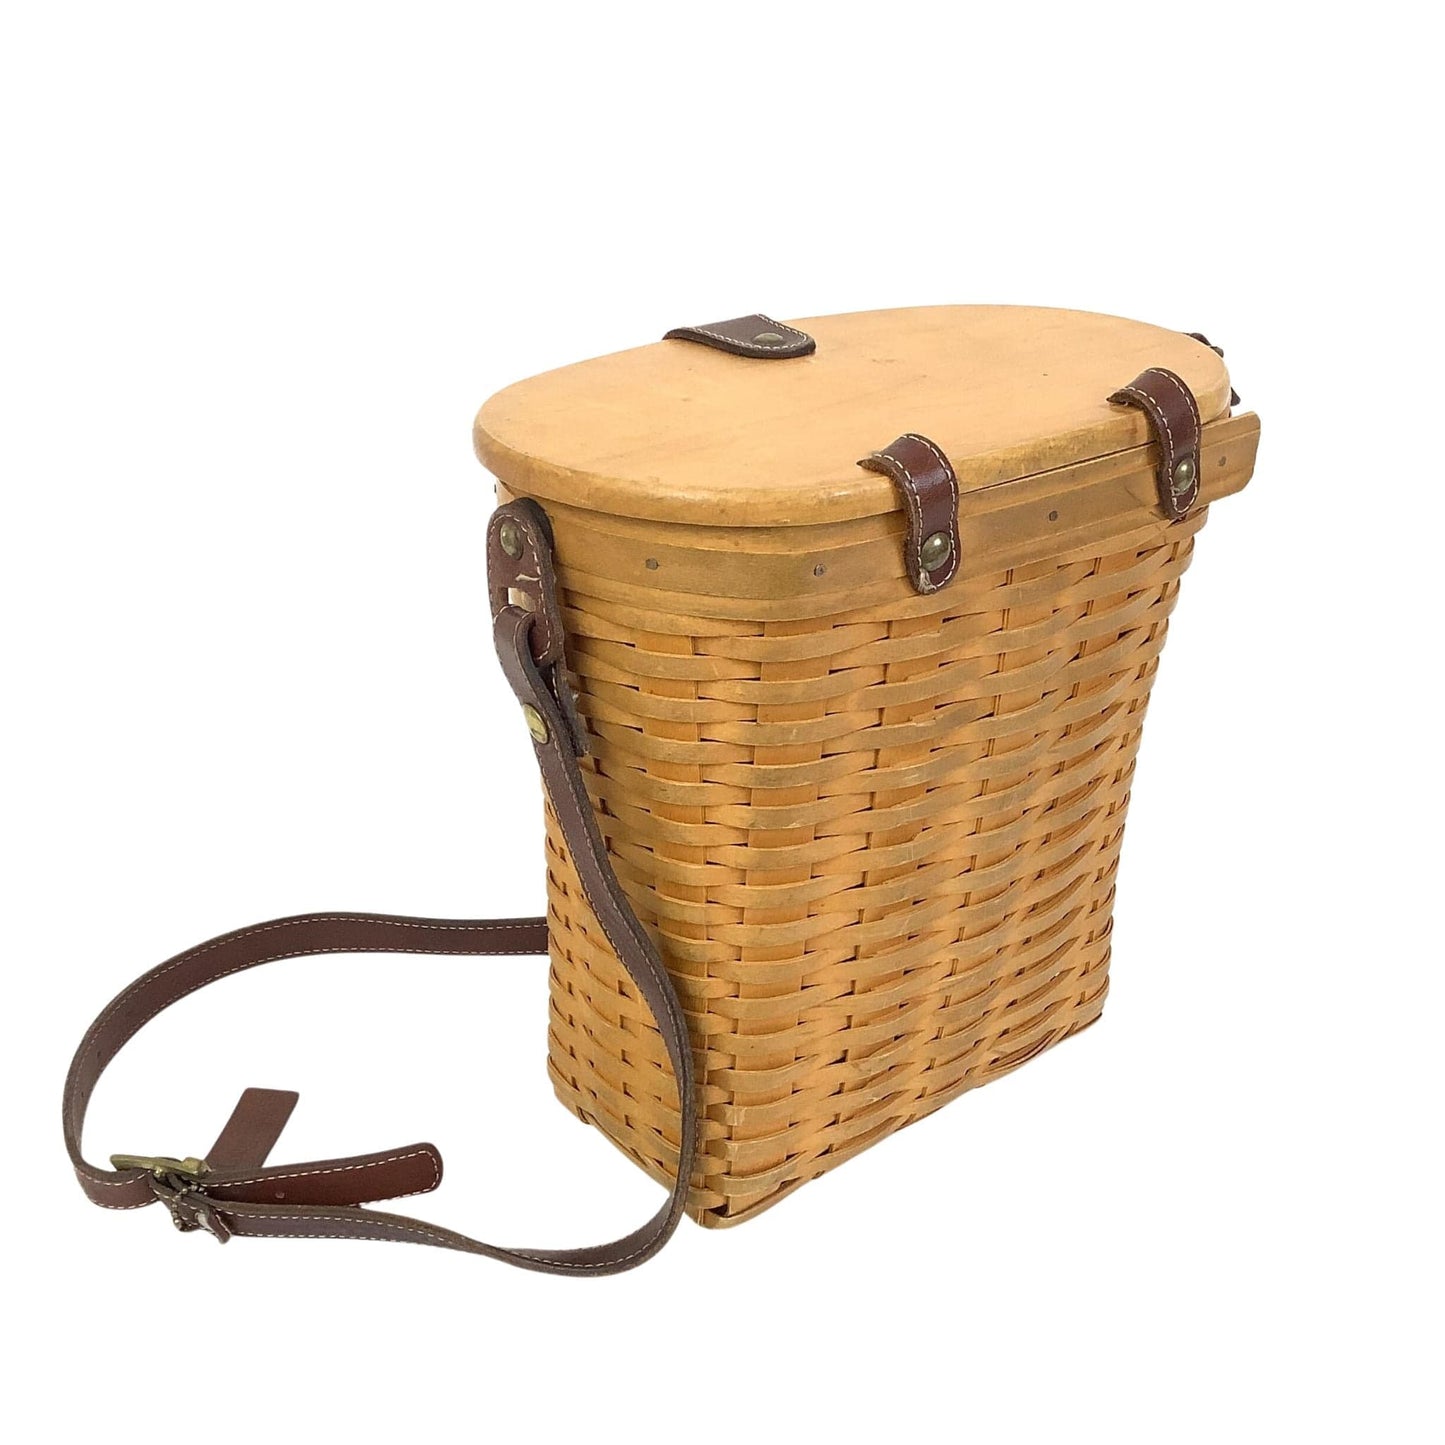 Longaberger Basket Bag Natural / Wood / Vintage 1990s